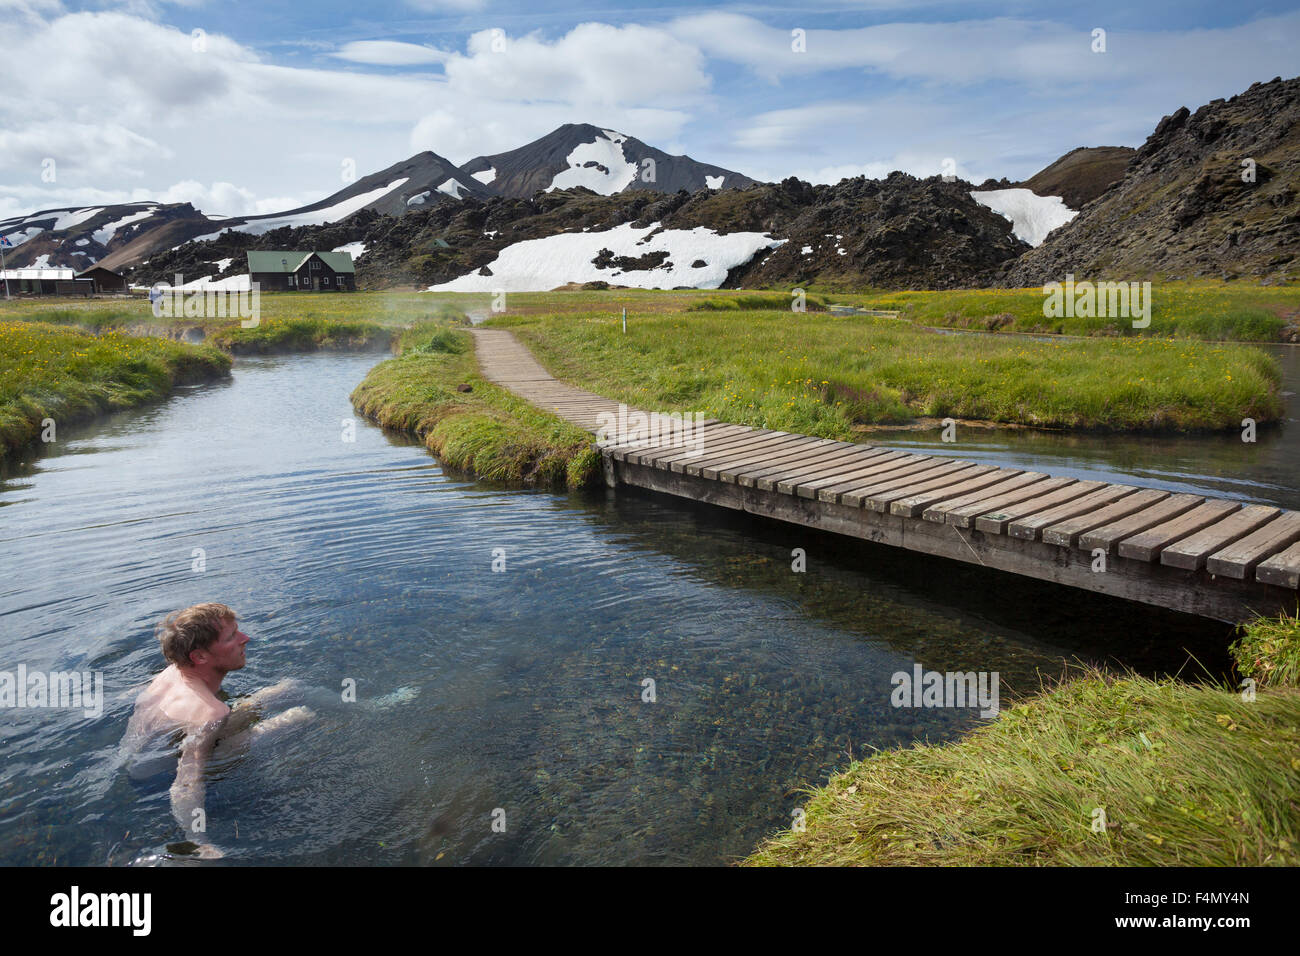 Profitant de la nageuse hot springs à Landmannalaugar, Sudhurland, Islande. Banque D'Images